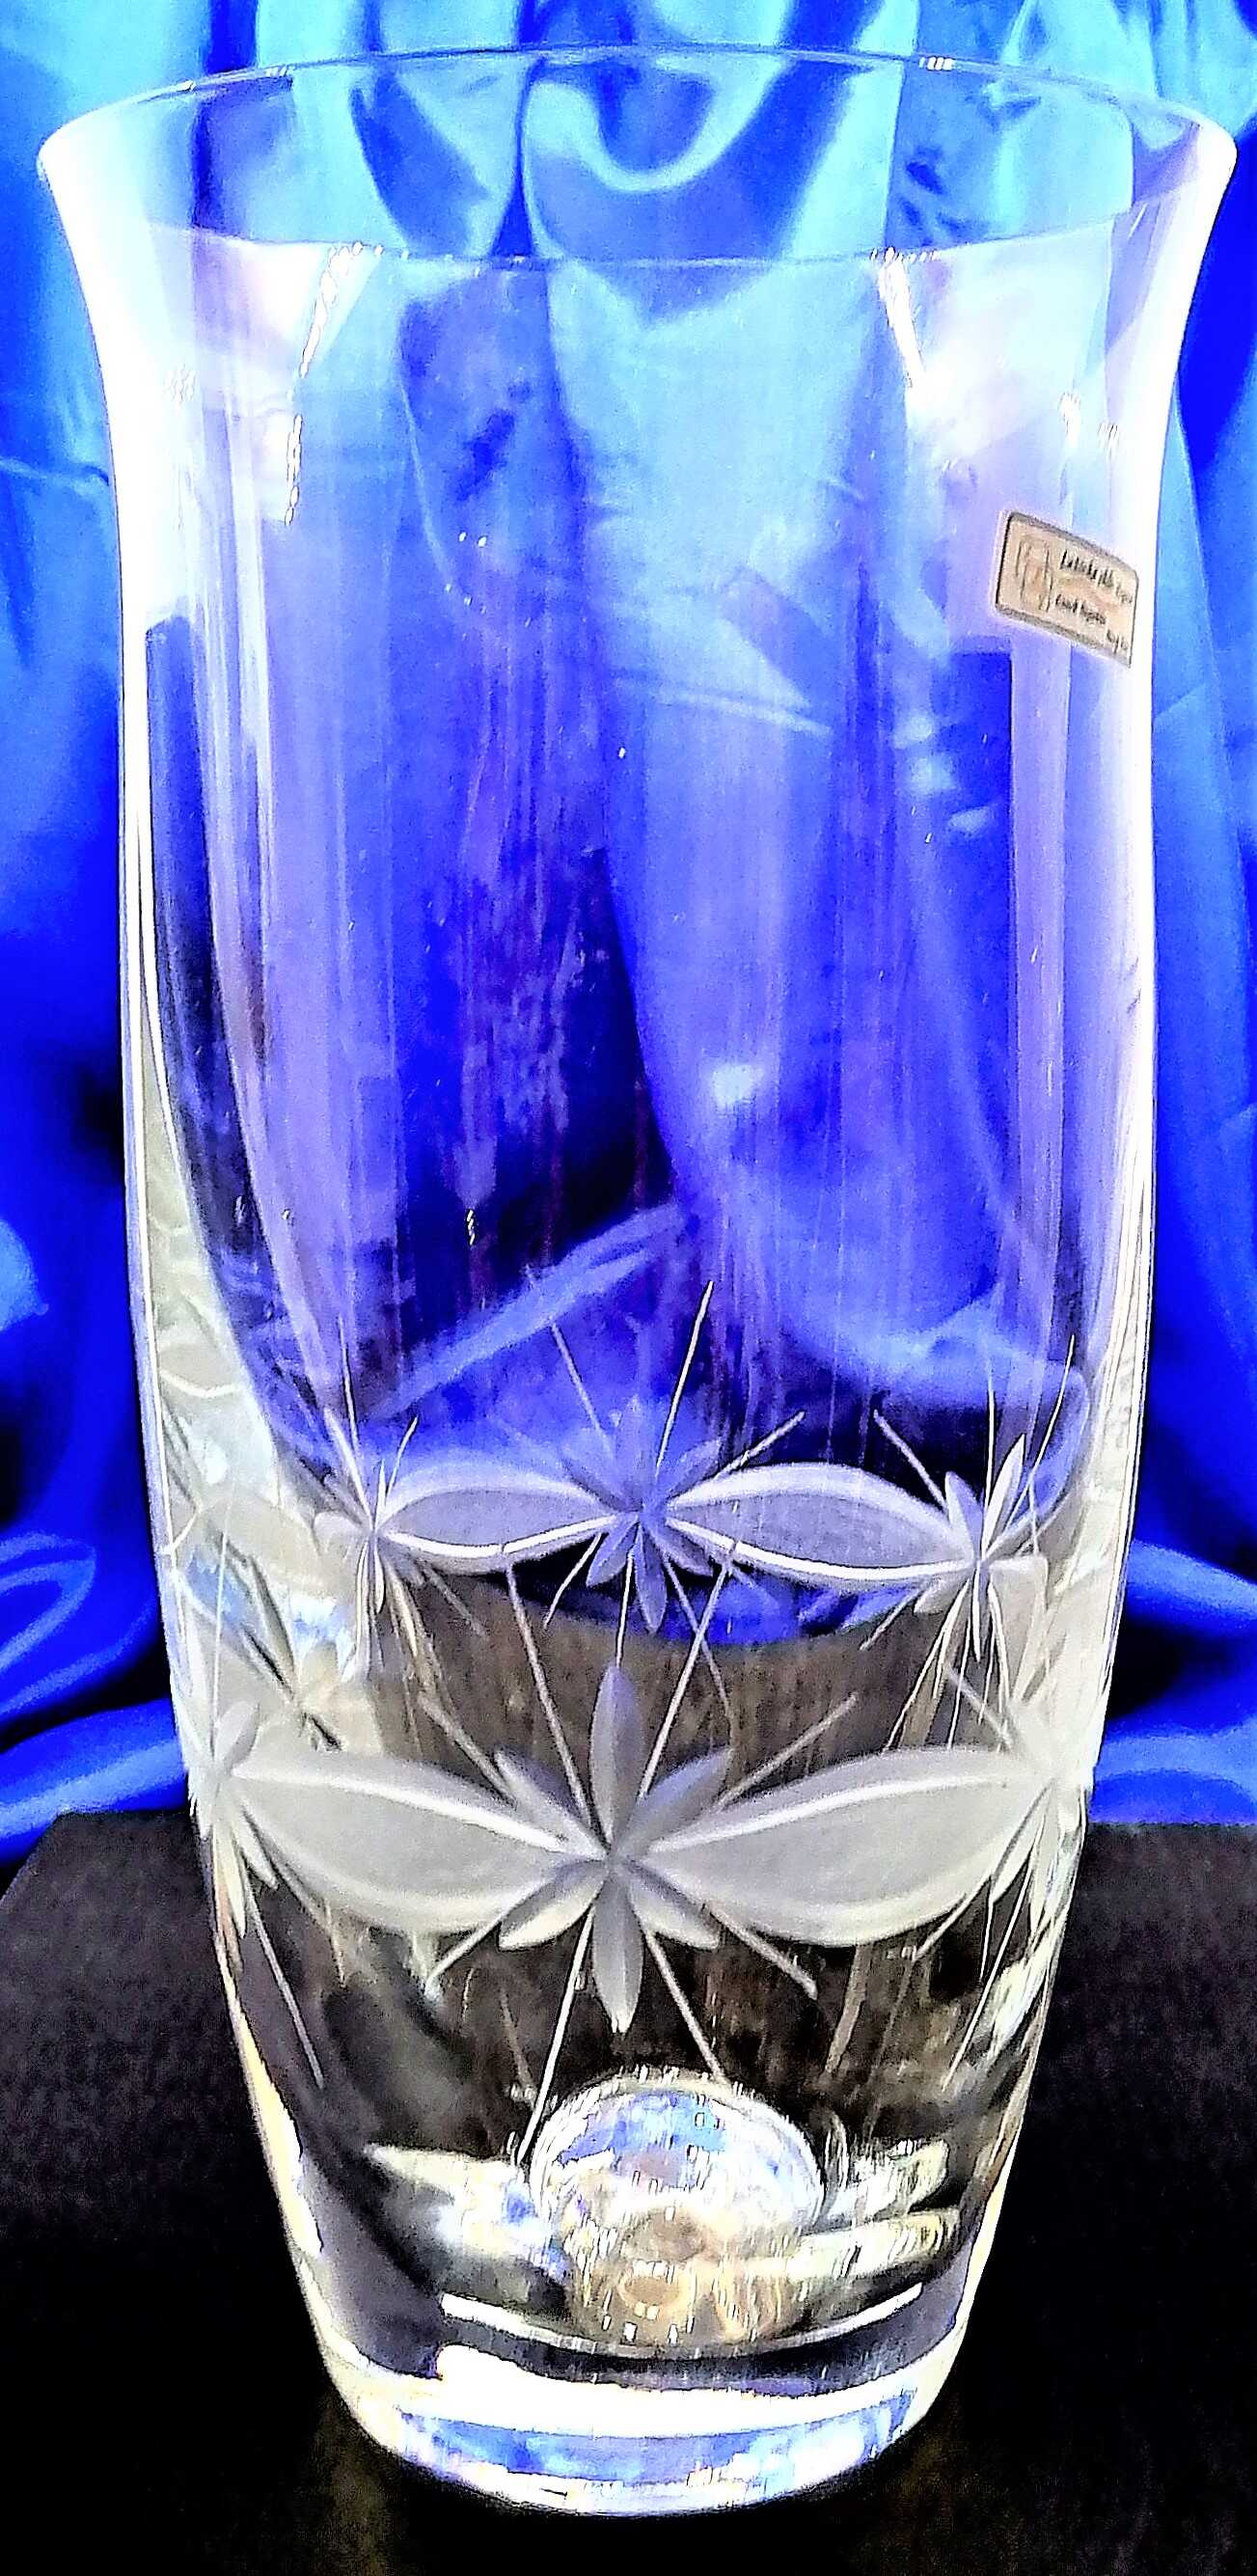 LsG-Crystal Váza skleněná broušená/ rytá křišťál dekor Kanta WA-138 228 x 120 mm 1 Ks.